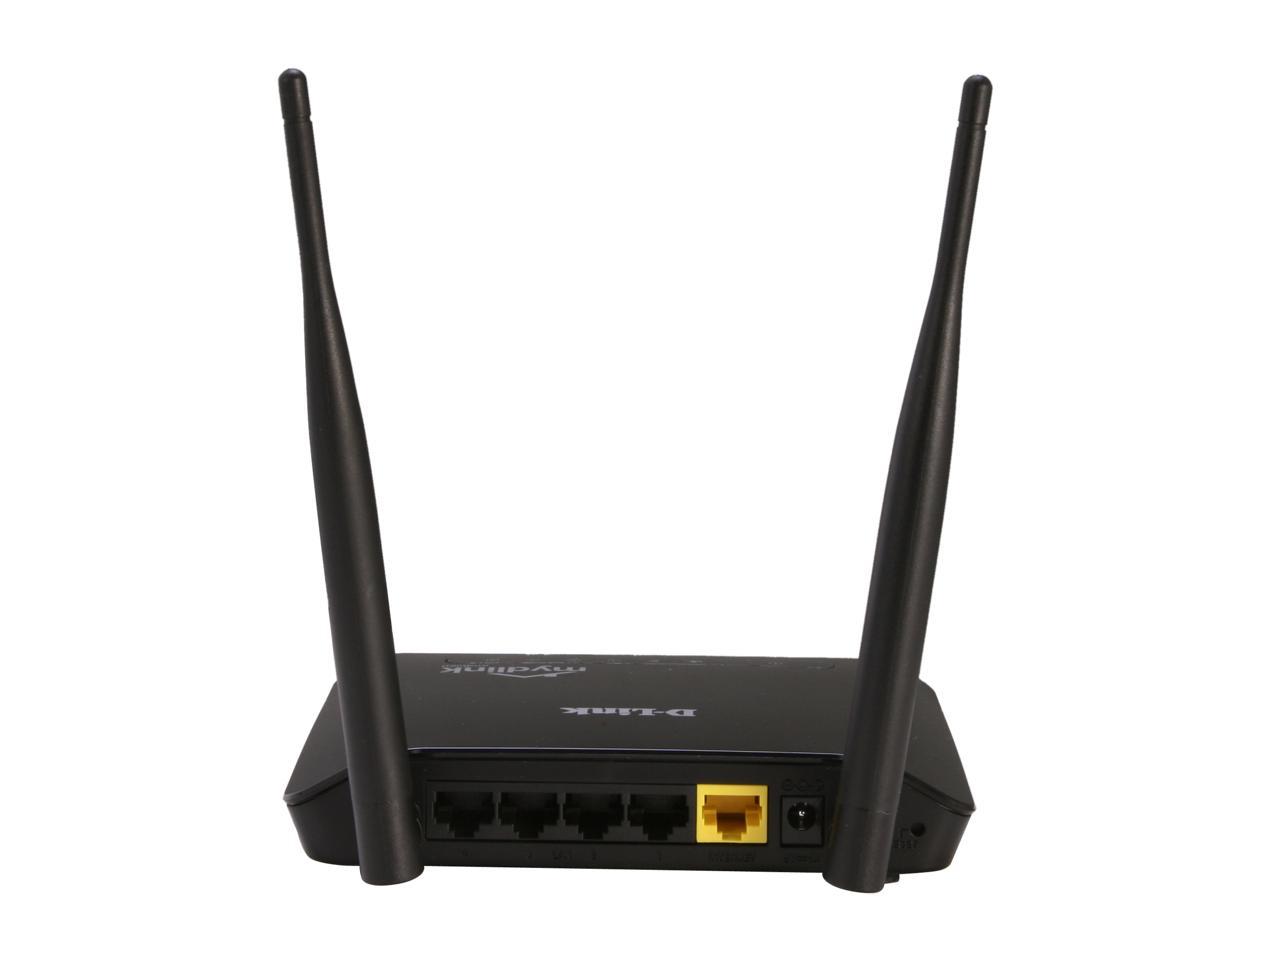 Wireless N 300 Home Cloud Router (DIR-605L/EEU)